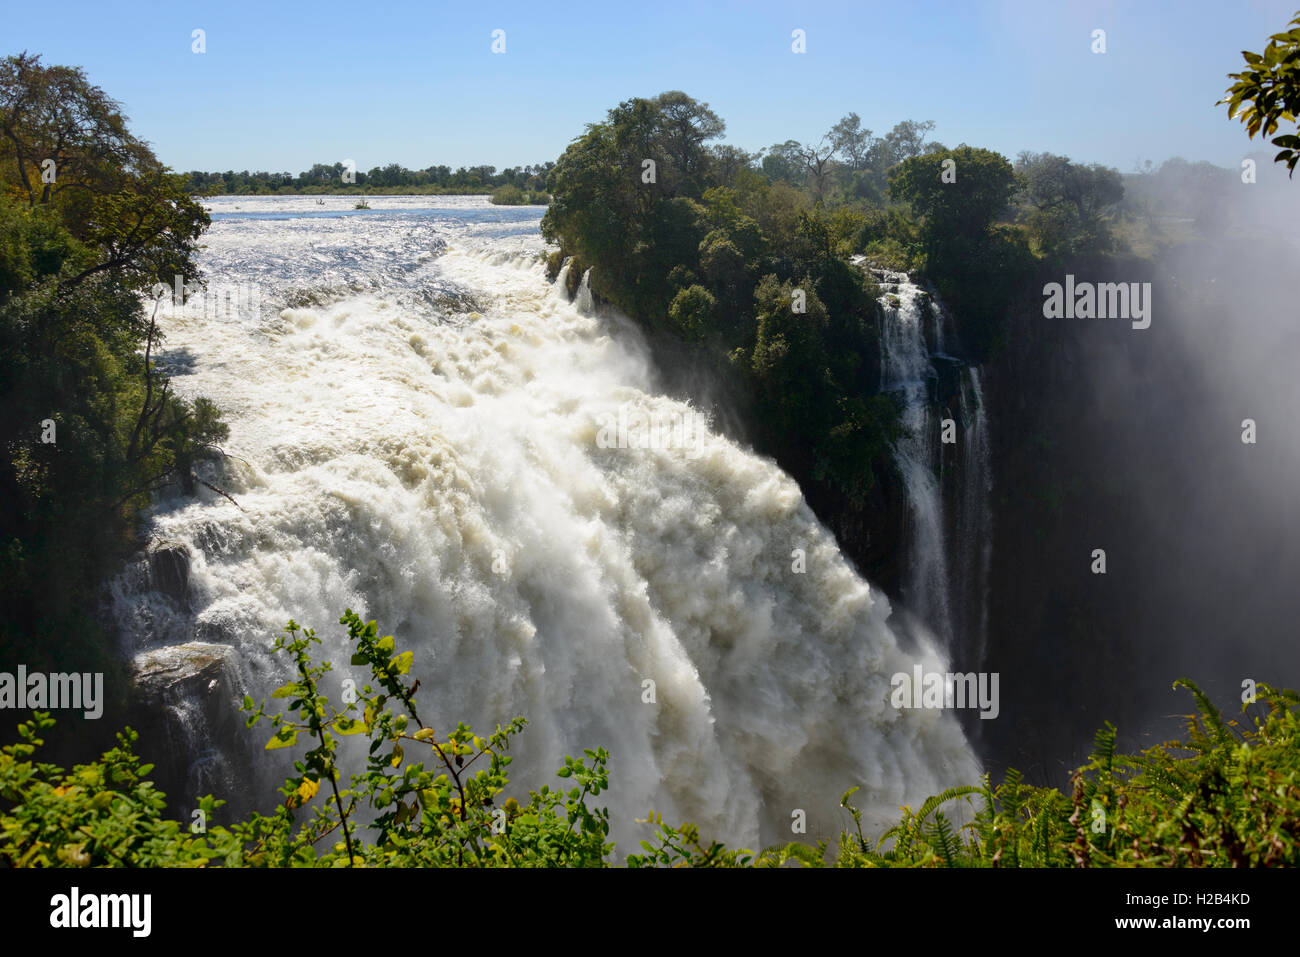 River Zambezi, Victoria Falls, Zambia and Zimbabwe, Africa Stock Photo